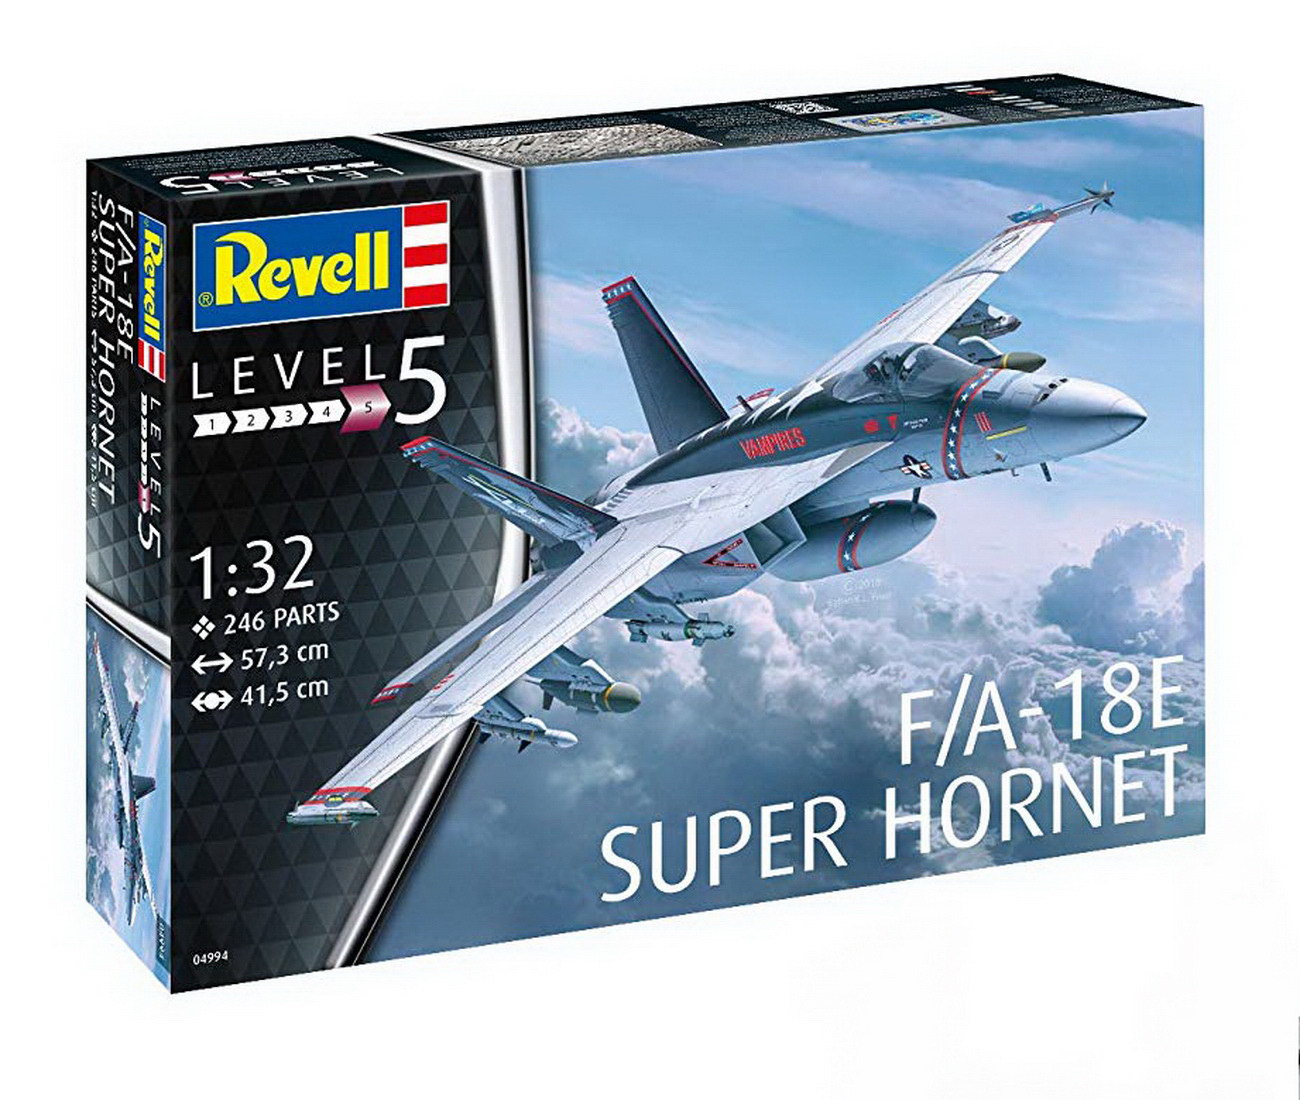 Revell 04994 - F/A-18E Super Hornet - Flugzeug Modell